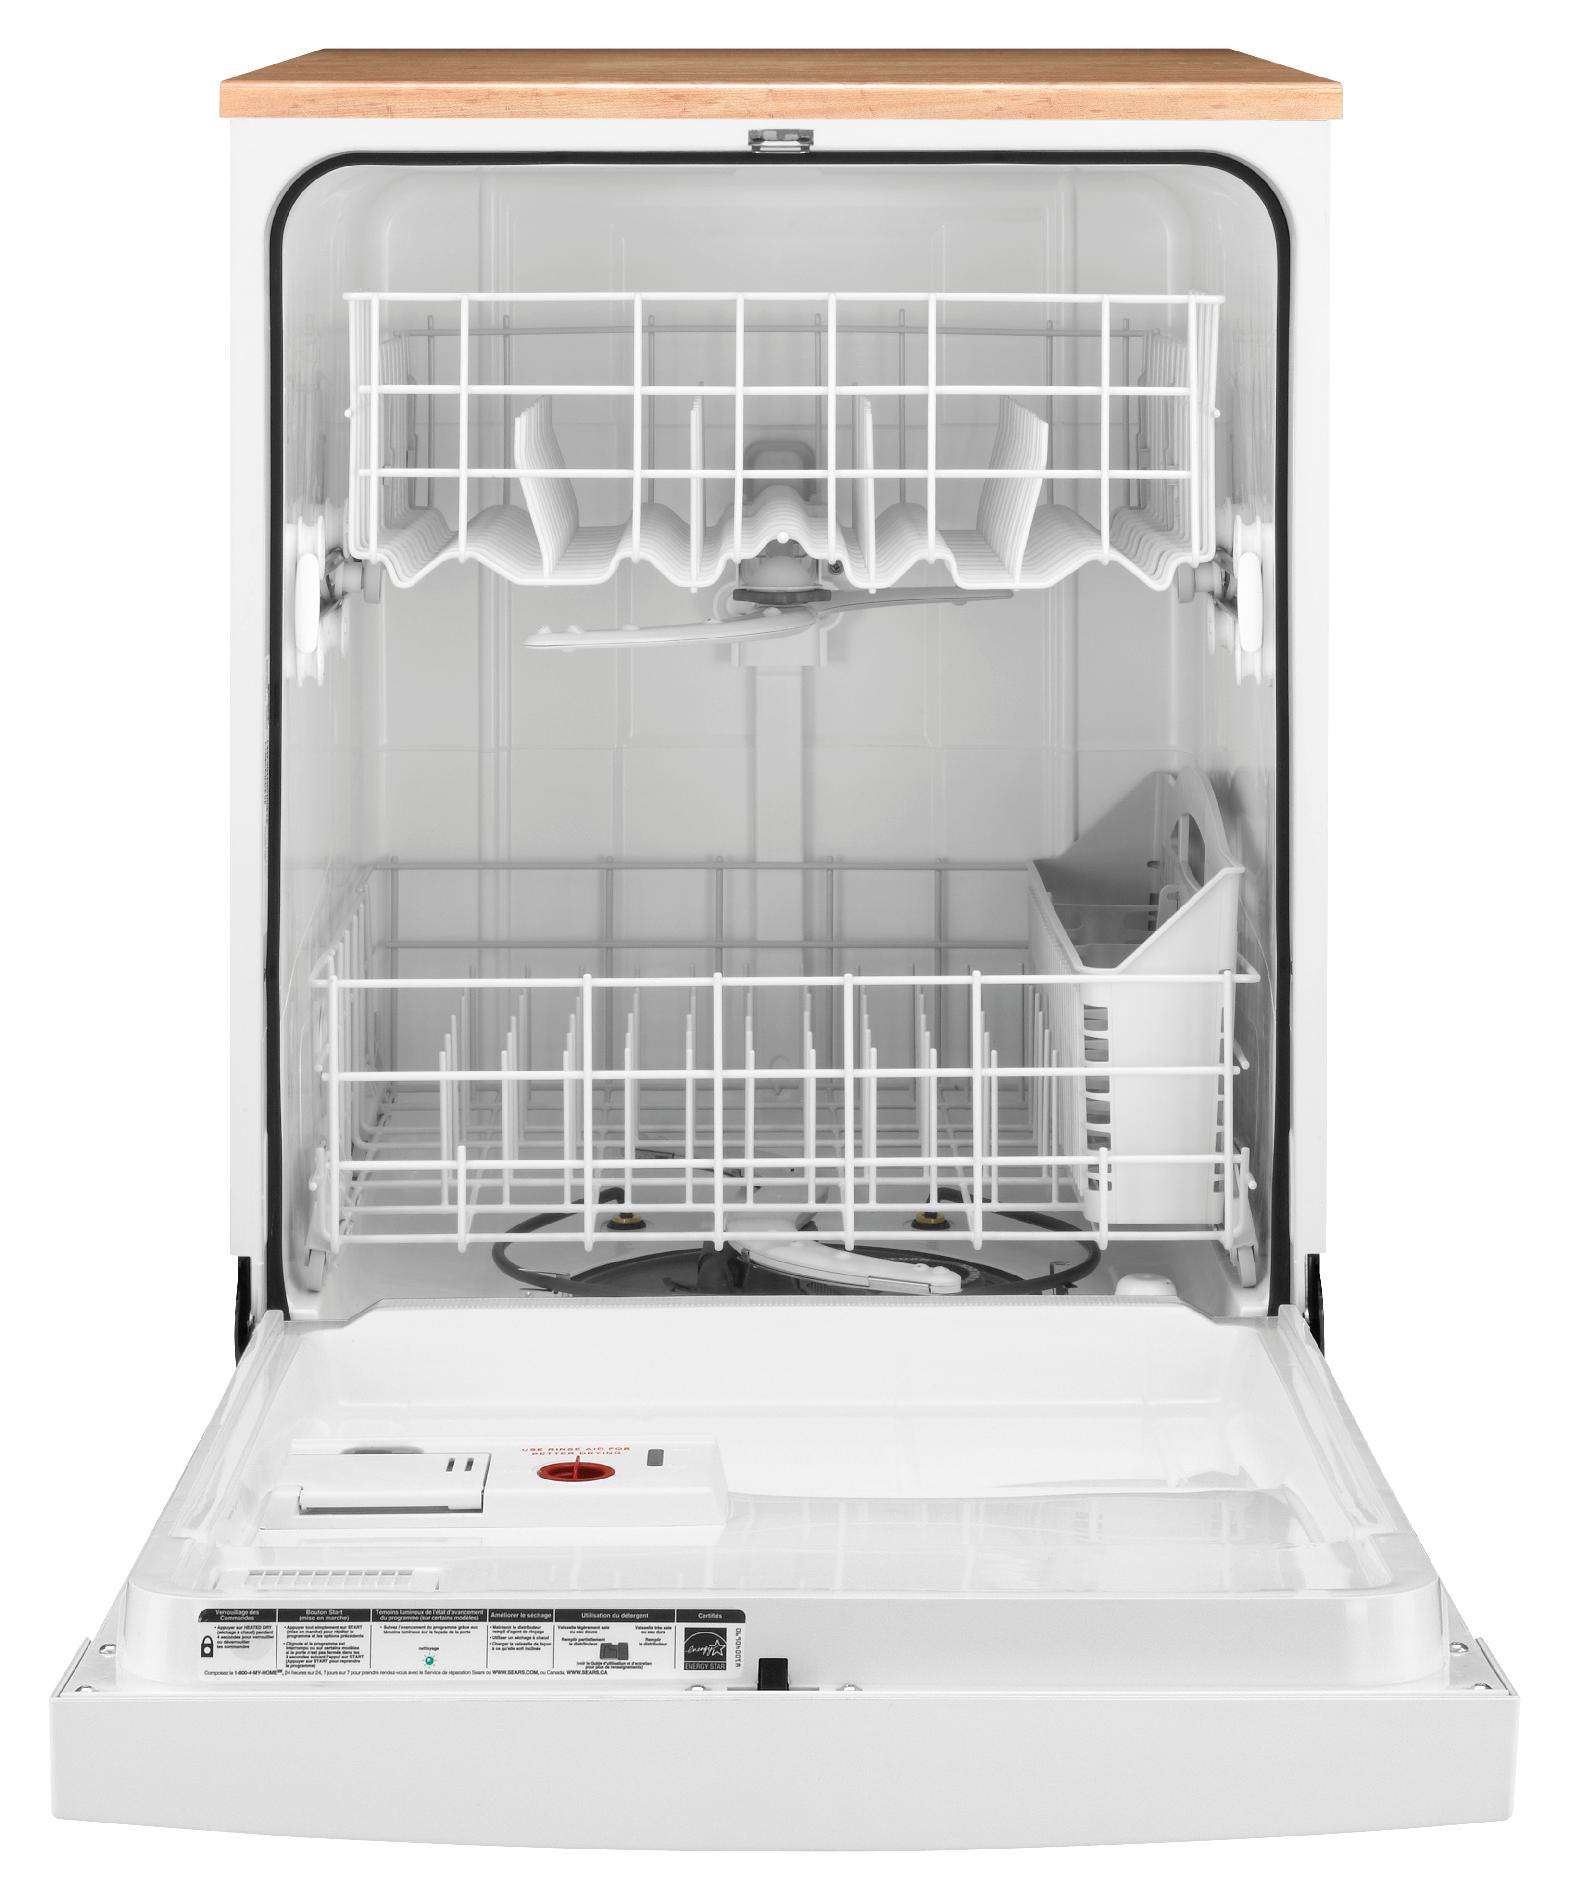 kenmore portable dishwasher